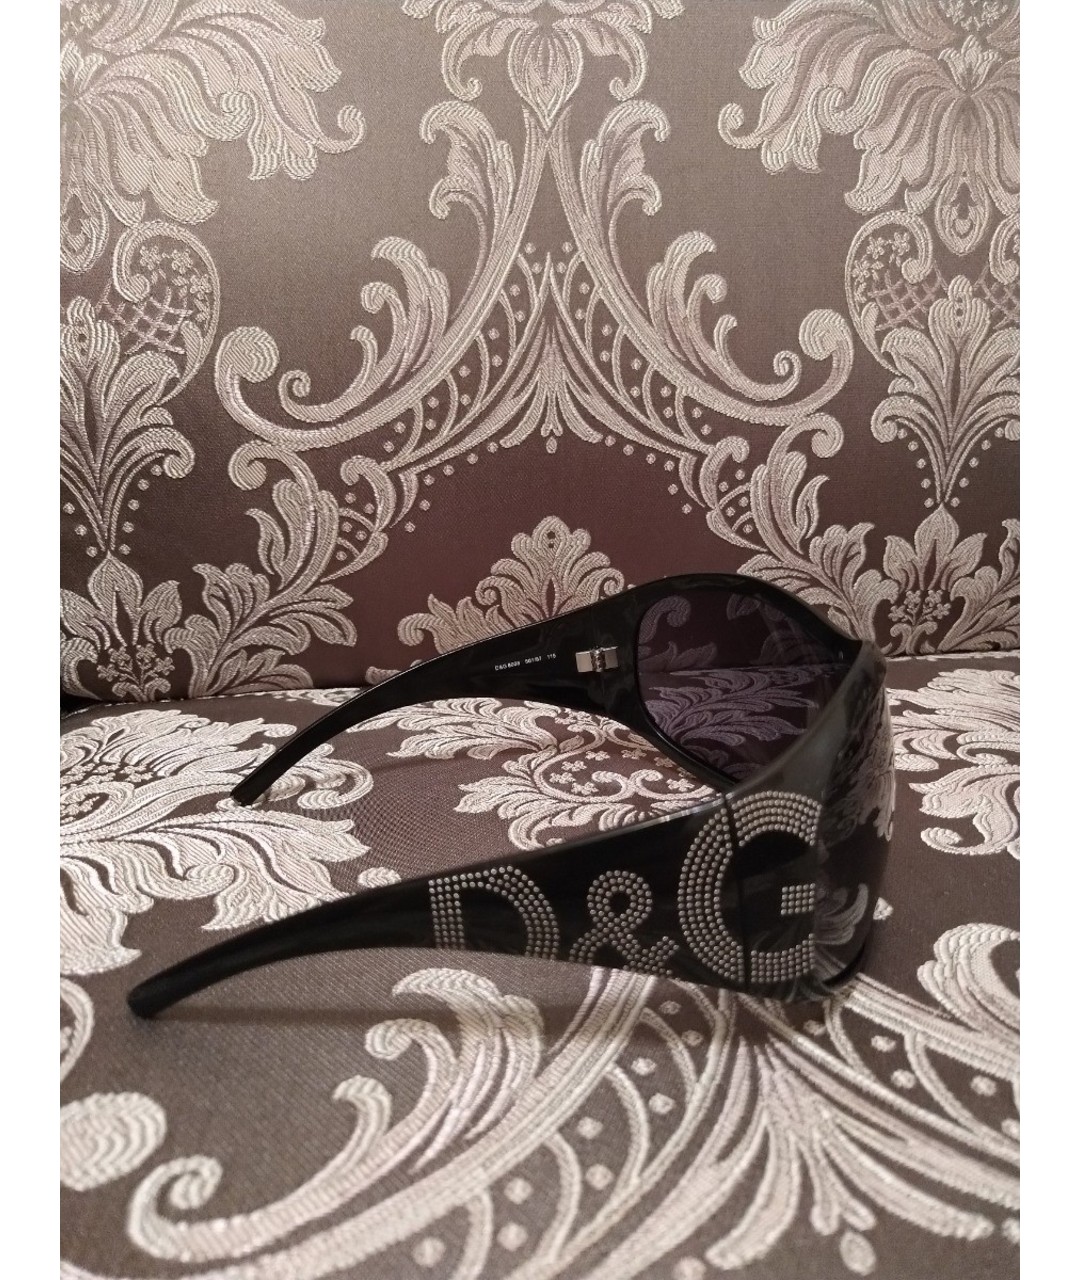 DOLCE&GABBANA Черные пластиковые солнцезащитные очки, фото 2